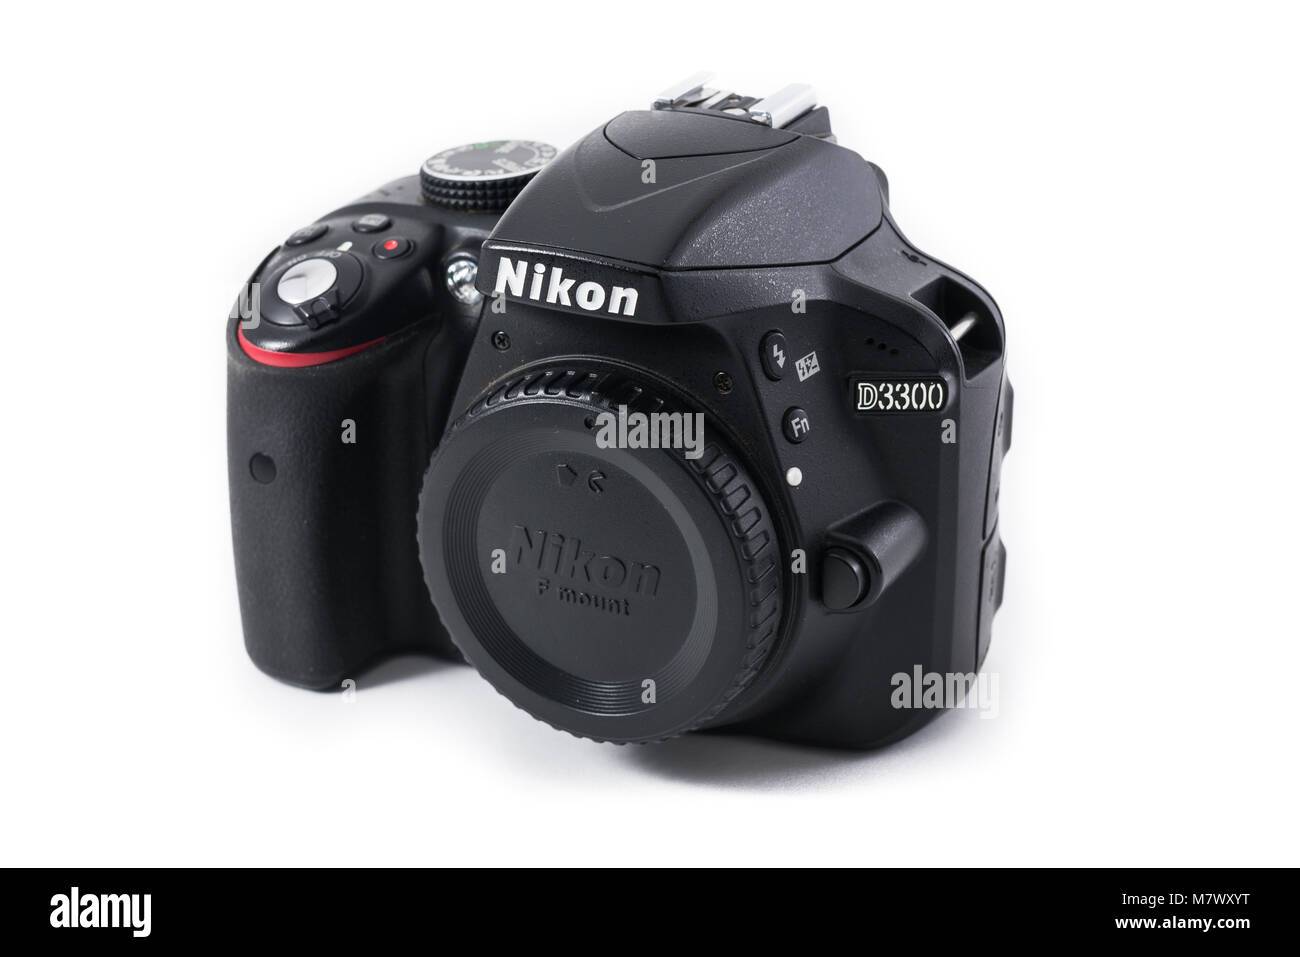 Nikon d3300 immagini e fotografie stock ad alta risoluzione - Alamy